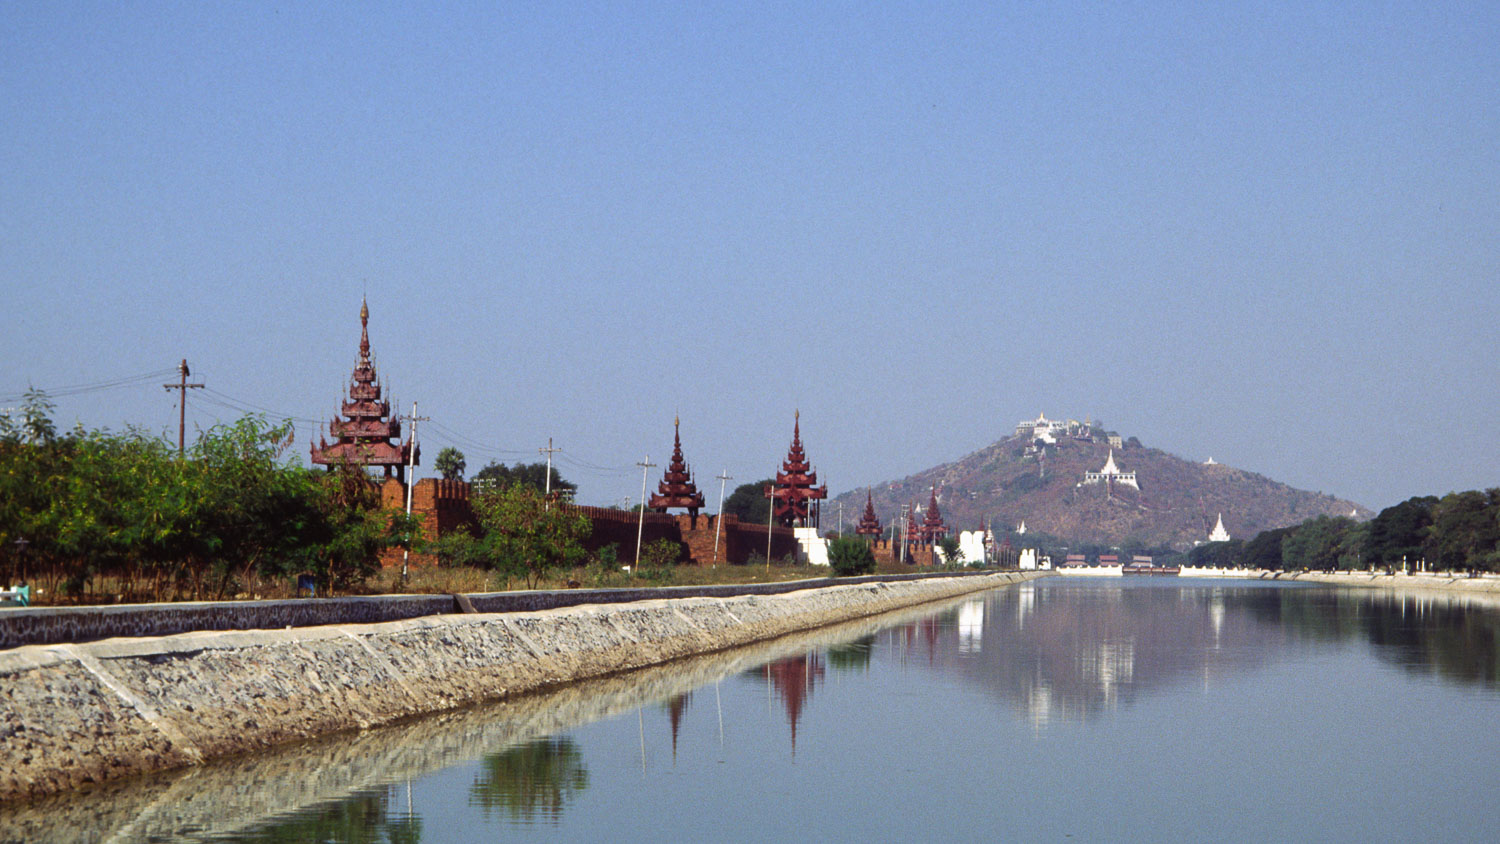 MY96046-Mandalay-Royal-Palace-and-Mandalay-hill_v1.jpg